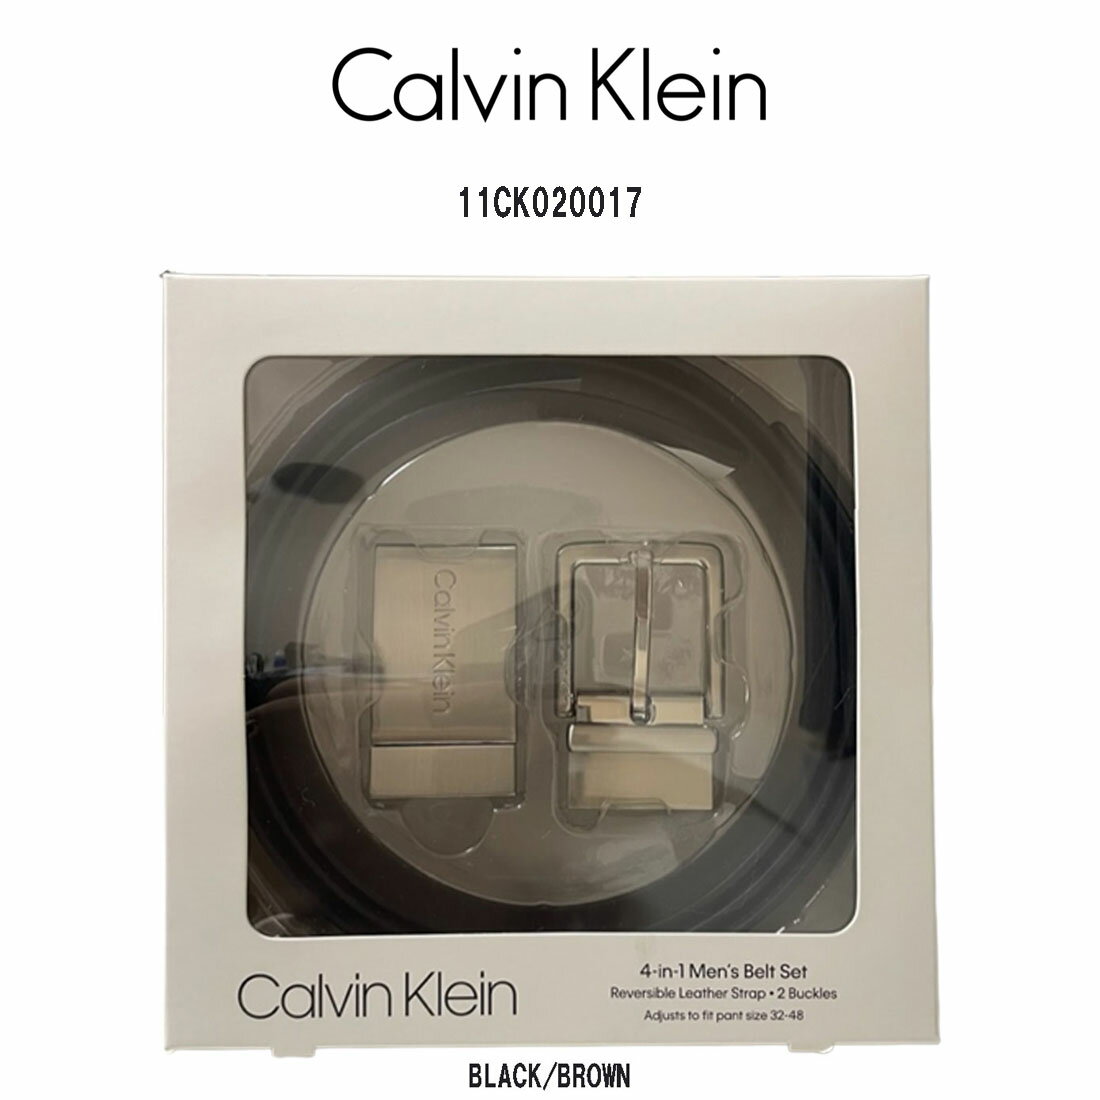 Calvin Klein(カルバンクライン)ck レザー ベルト セット リバーシブル スーツ ビジネス カジュアル メンズ 11CK020017